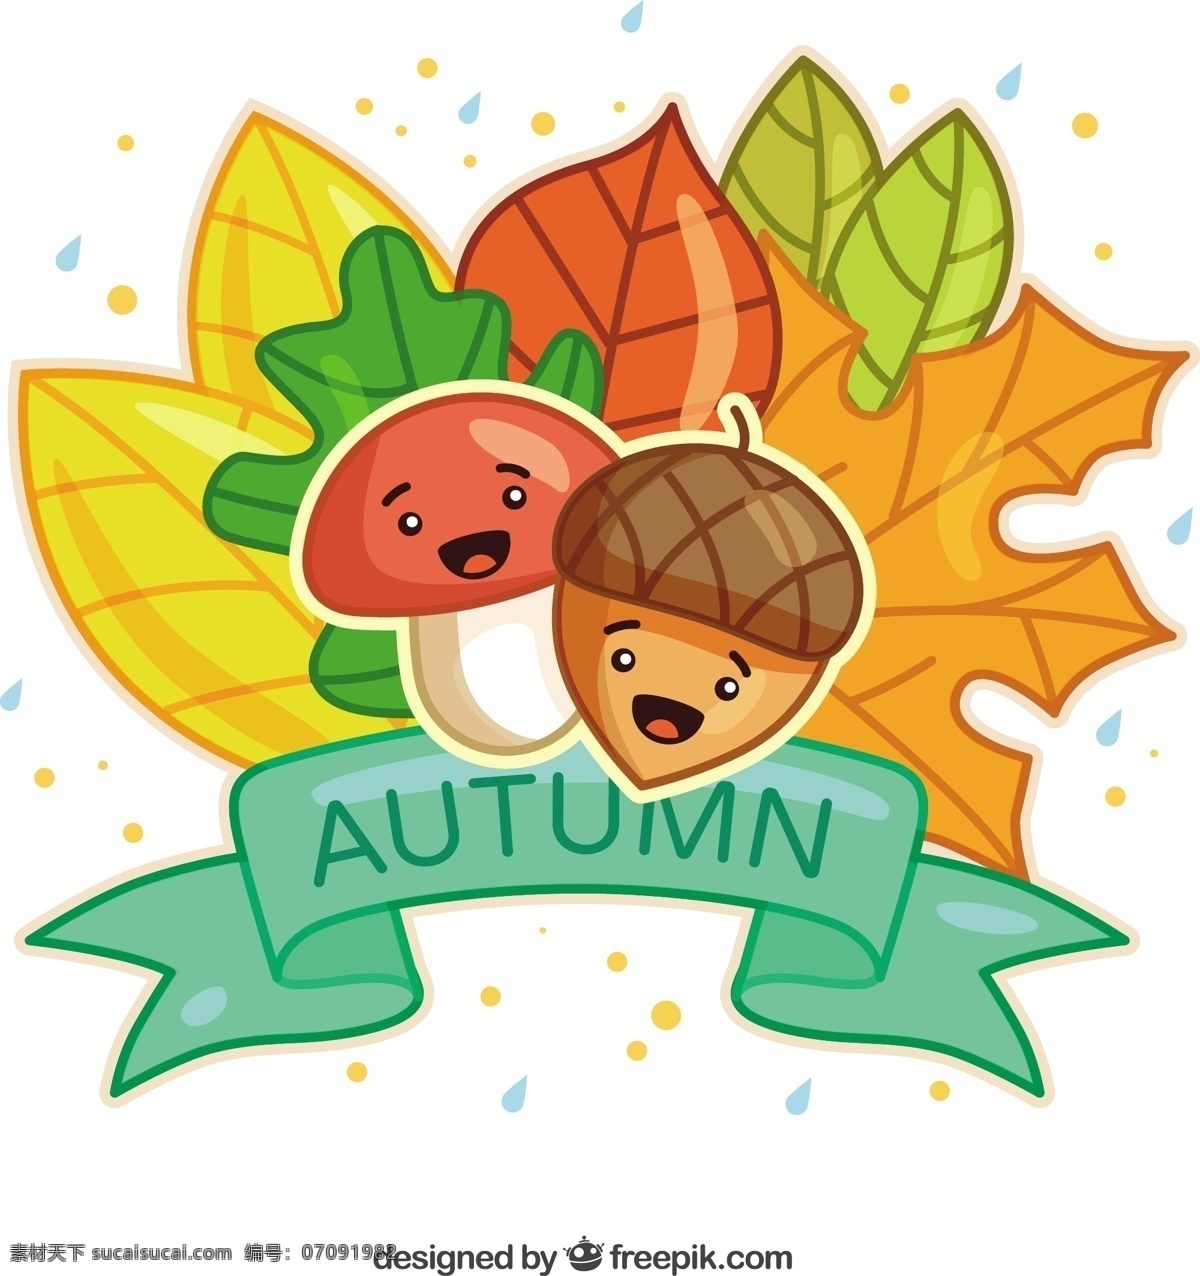 可爱 秋天 插图 自然 可爱的叶子 蘑菇 秋天的落叶 秋天的季节 季节 橡子 白色